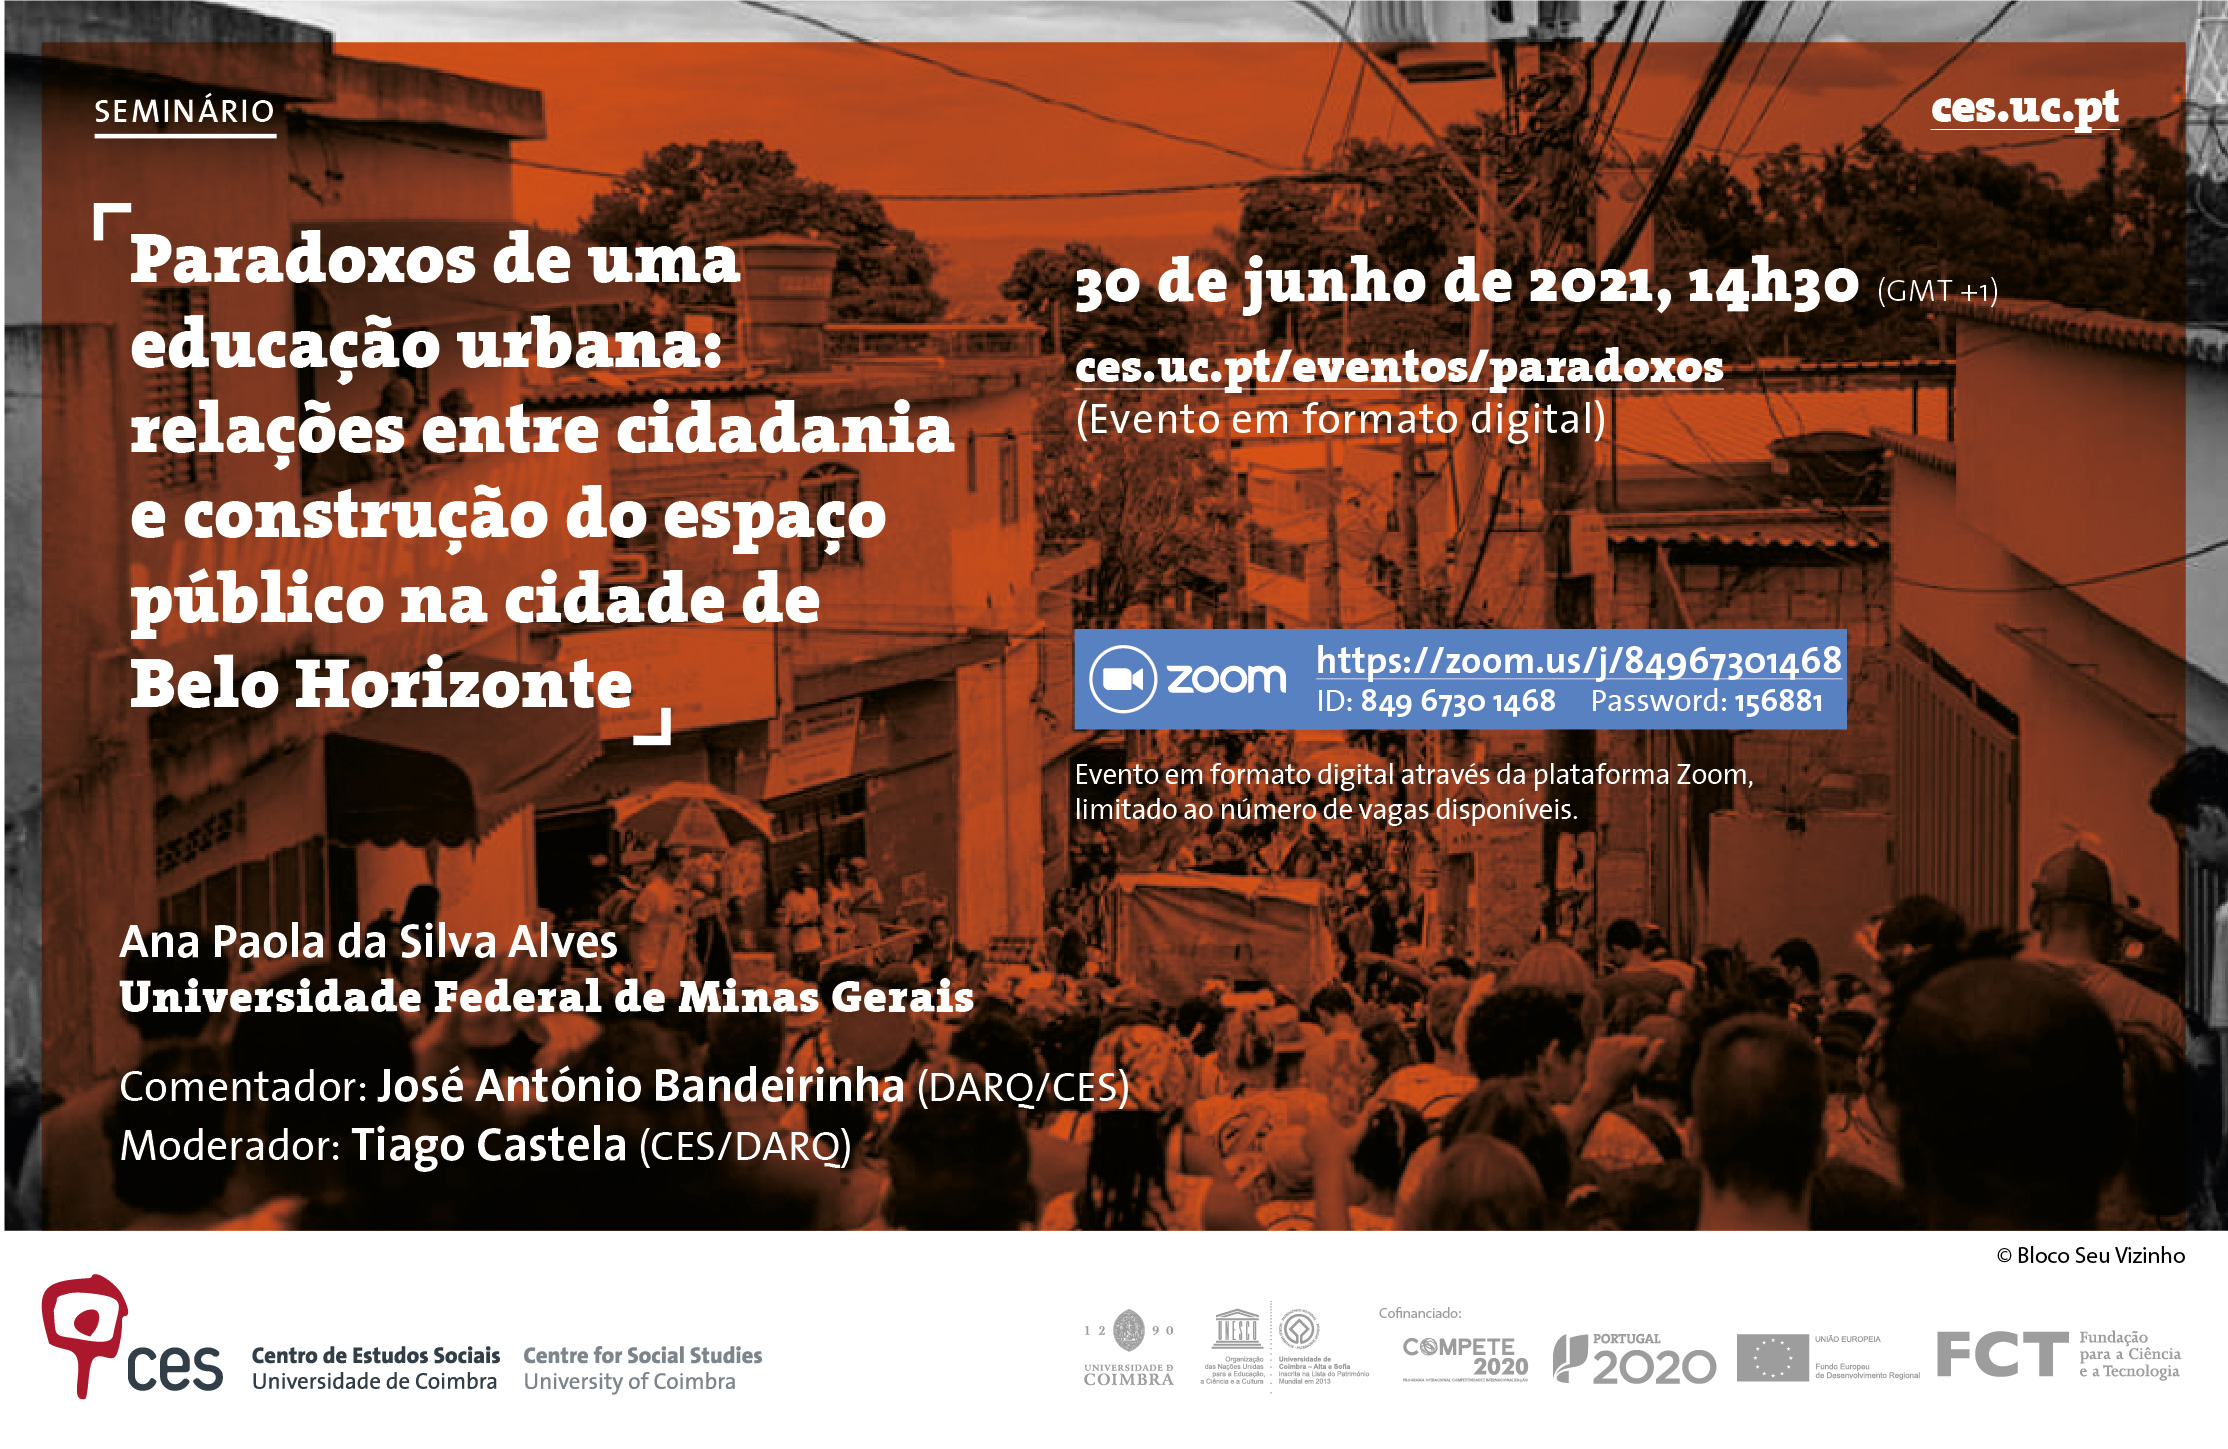 Paradoxos de uma educação urbana: relações entre cidadania e construção do espaço público na cidade de Belo Horizonte<span id="edit_34300"><script>$(function() { $('#edit_34300').load( "/myces/user/editobj.php?tipo=evento&id=34300" ); });</script></span>